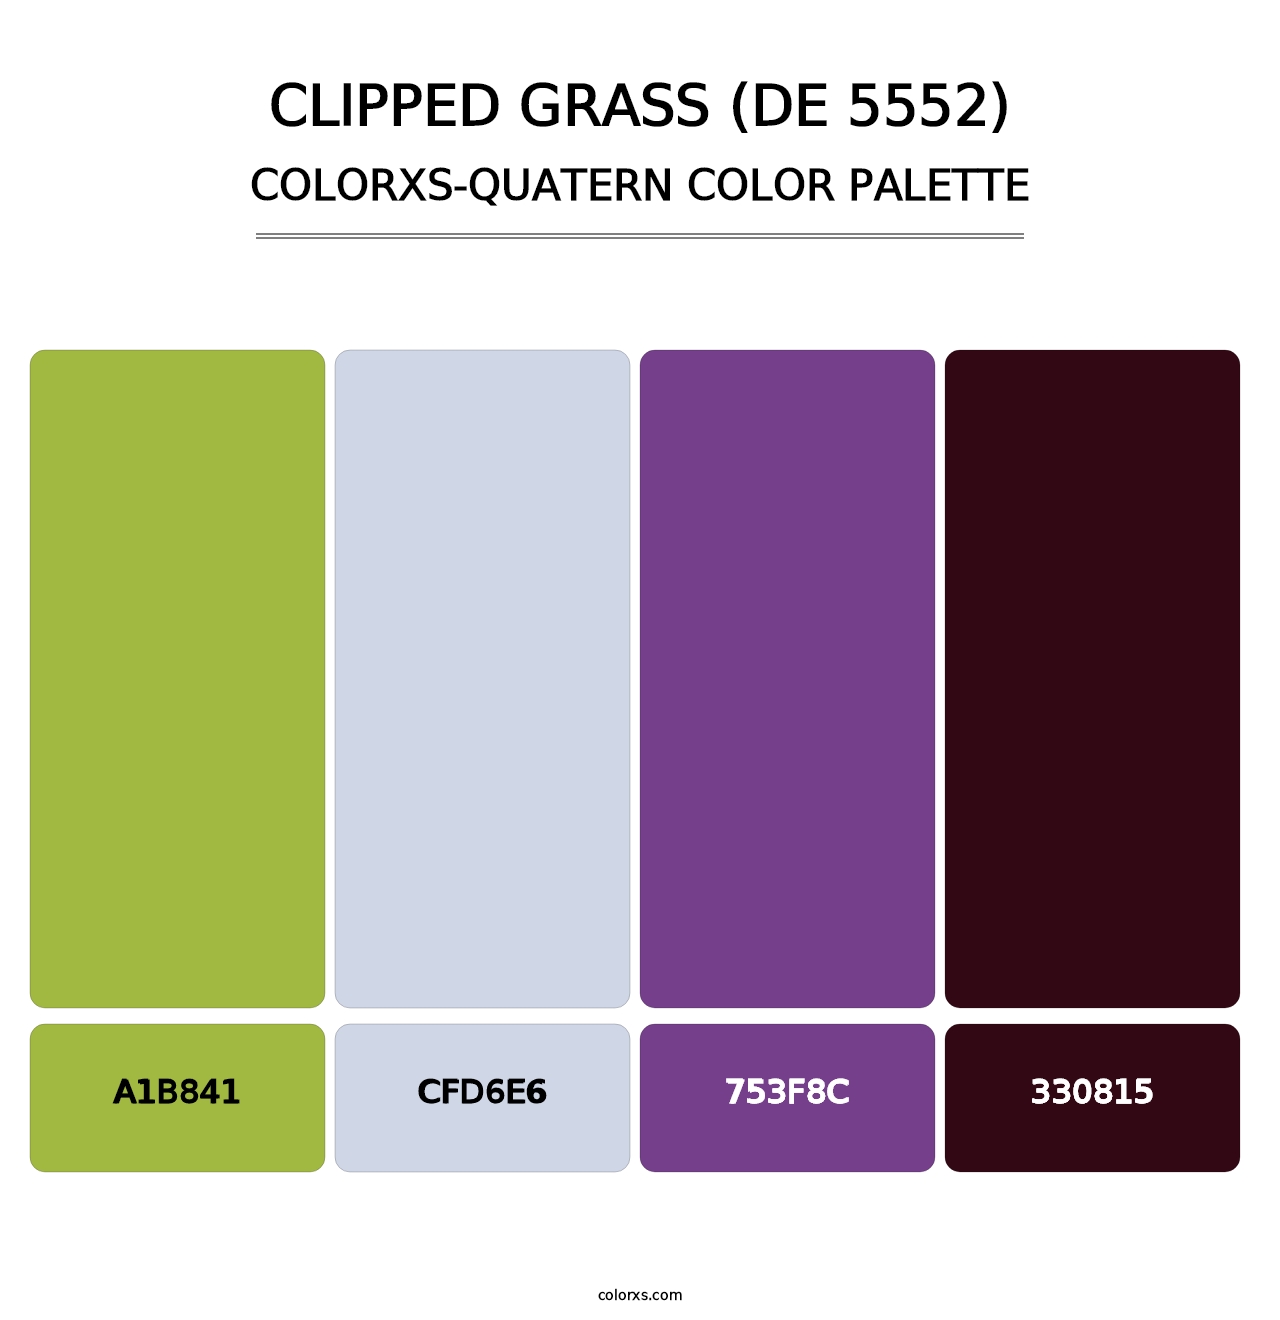 Clipped Grass (DE 5552) - Colorxs Quatern Palette